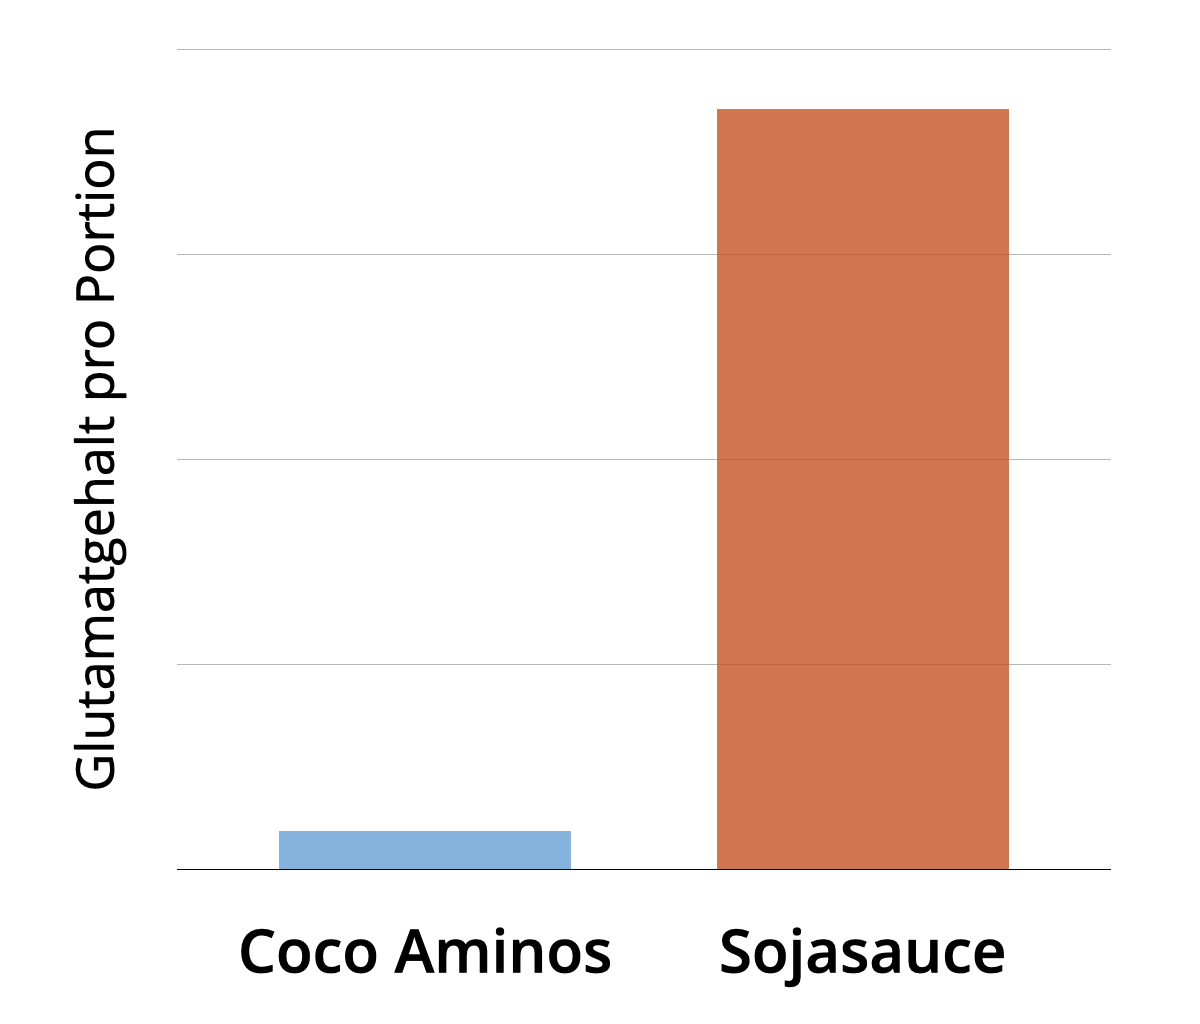 Vergleich des Glutamatgehaltes von Coco Aminos und Sojasauce